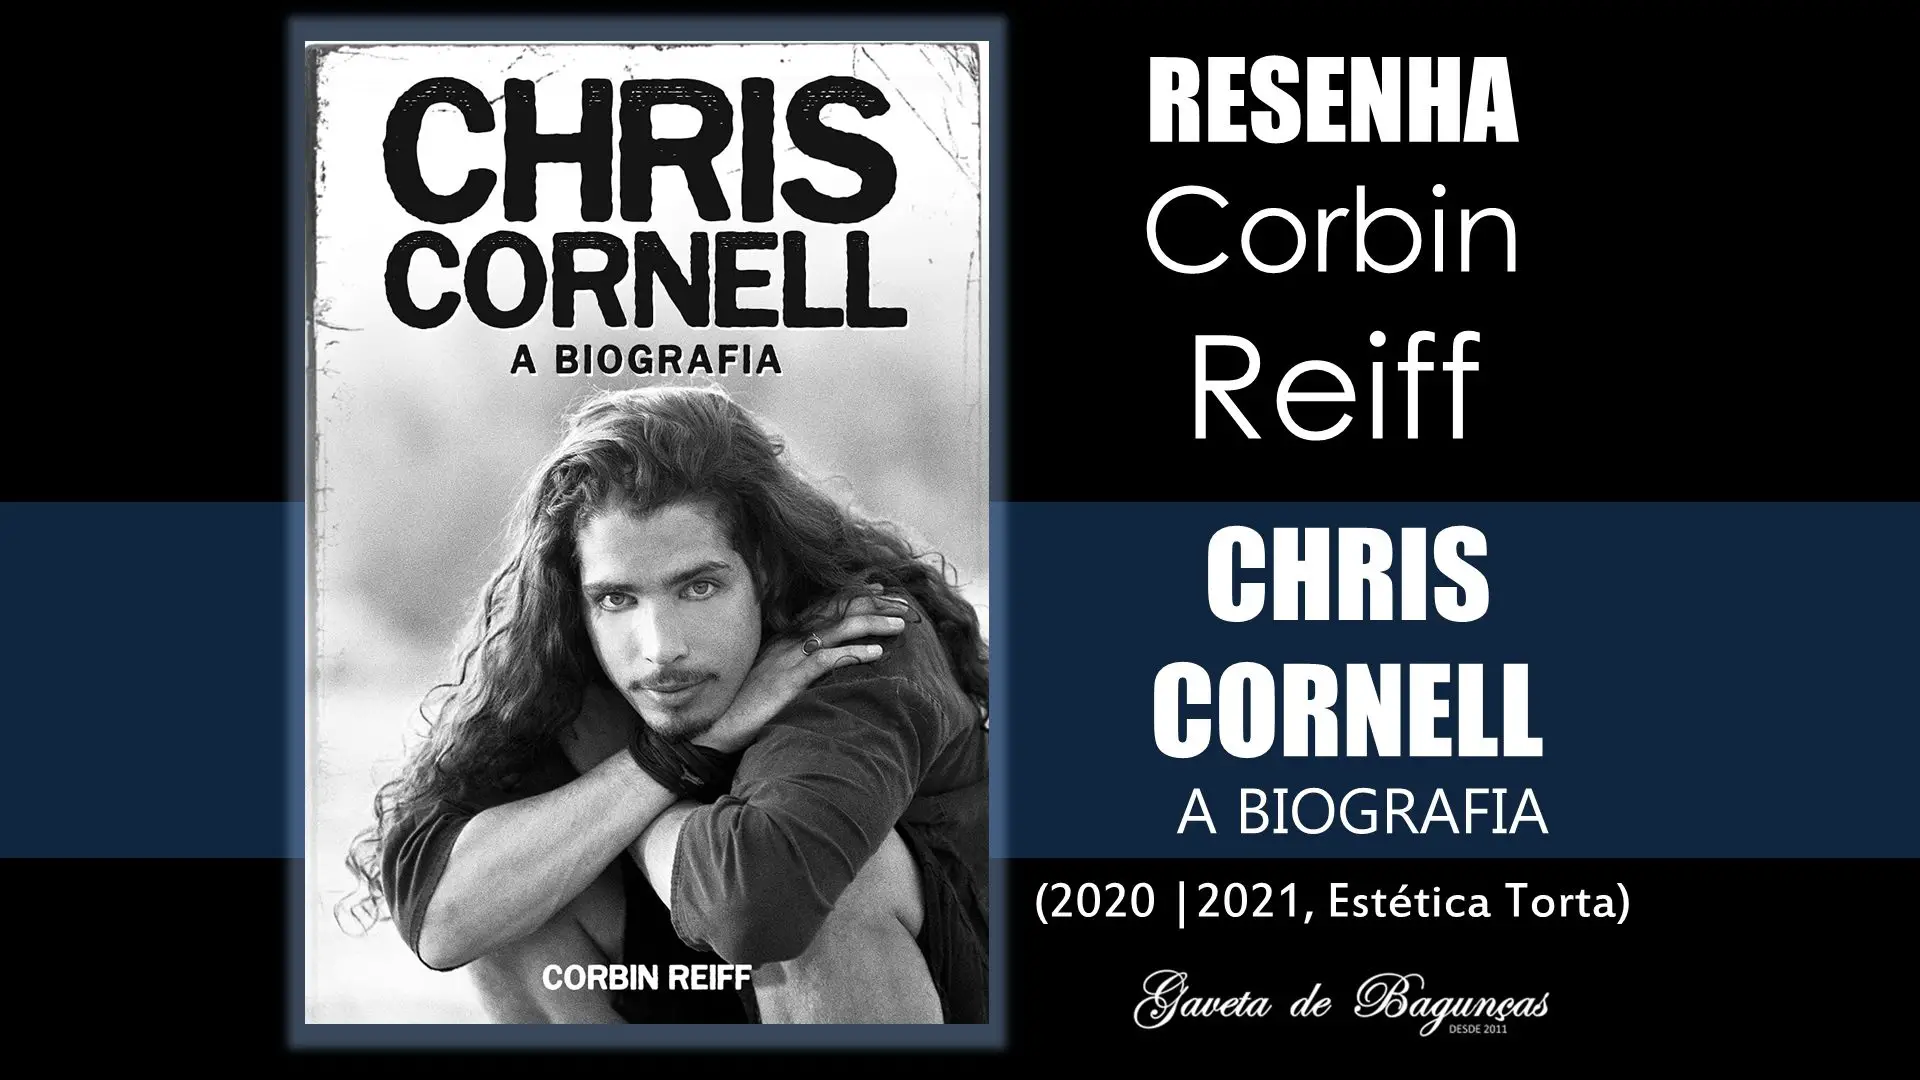 Chris Cornell Corbin Reiff Biografia Review Resenha Estática Torta